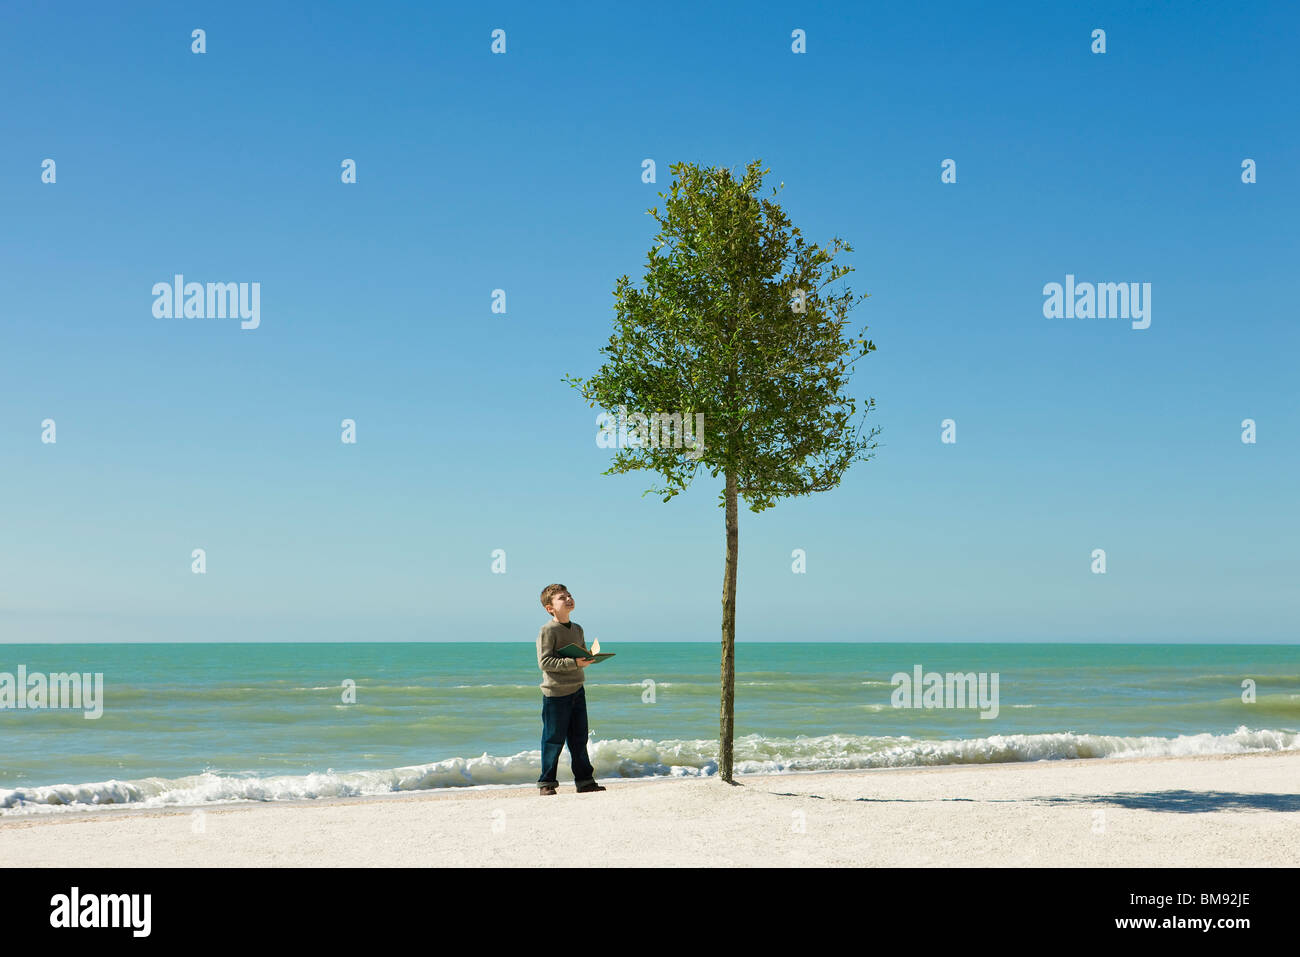 Boy am Strand mit offenen Buch in Händen, Baum wächst in Sand bewundern Stockfoto